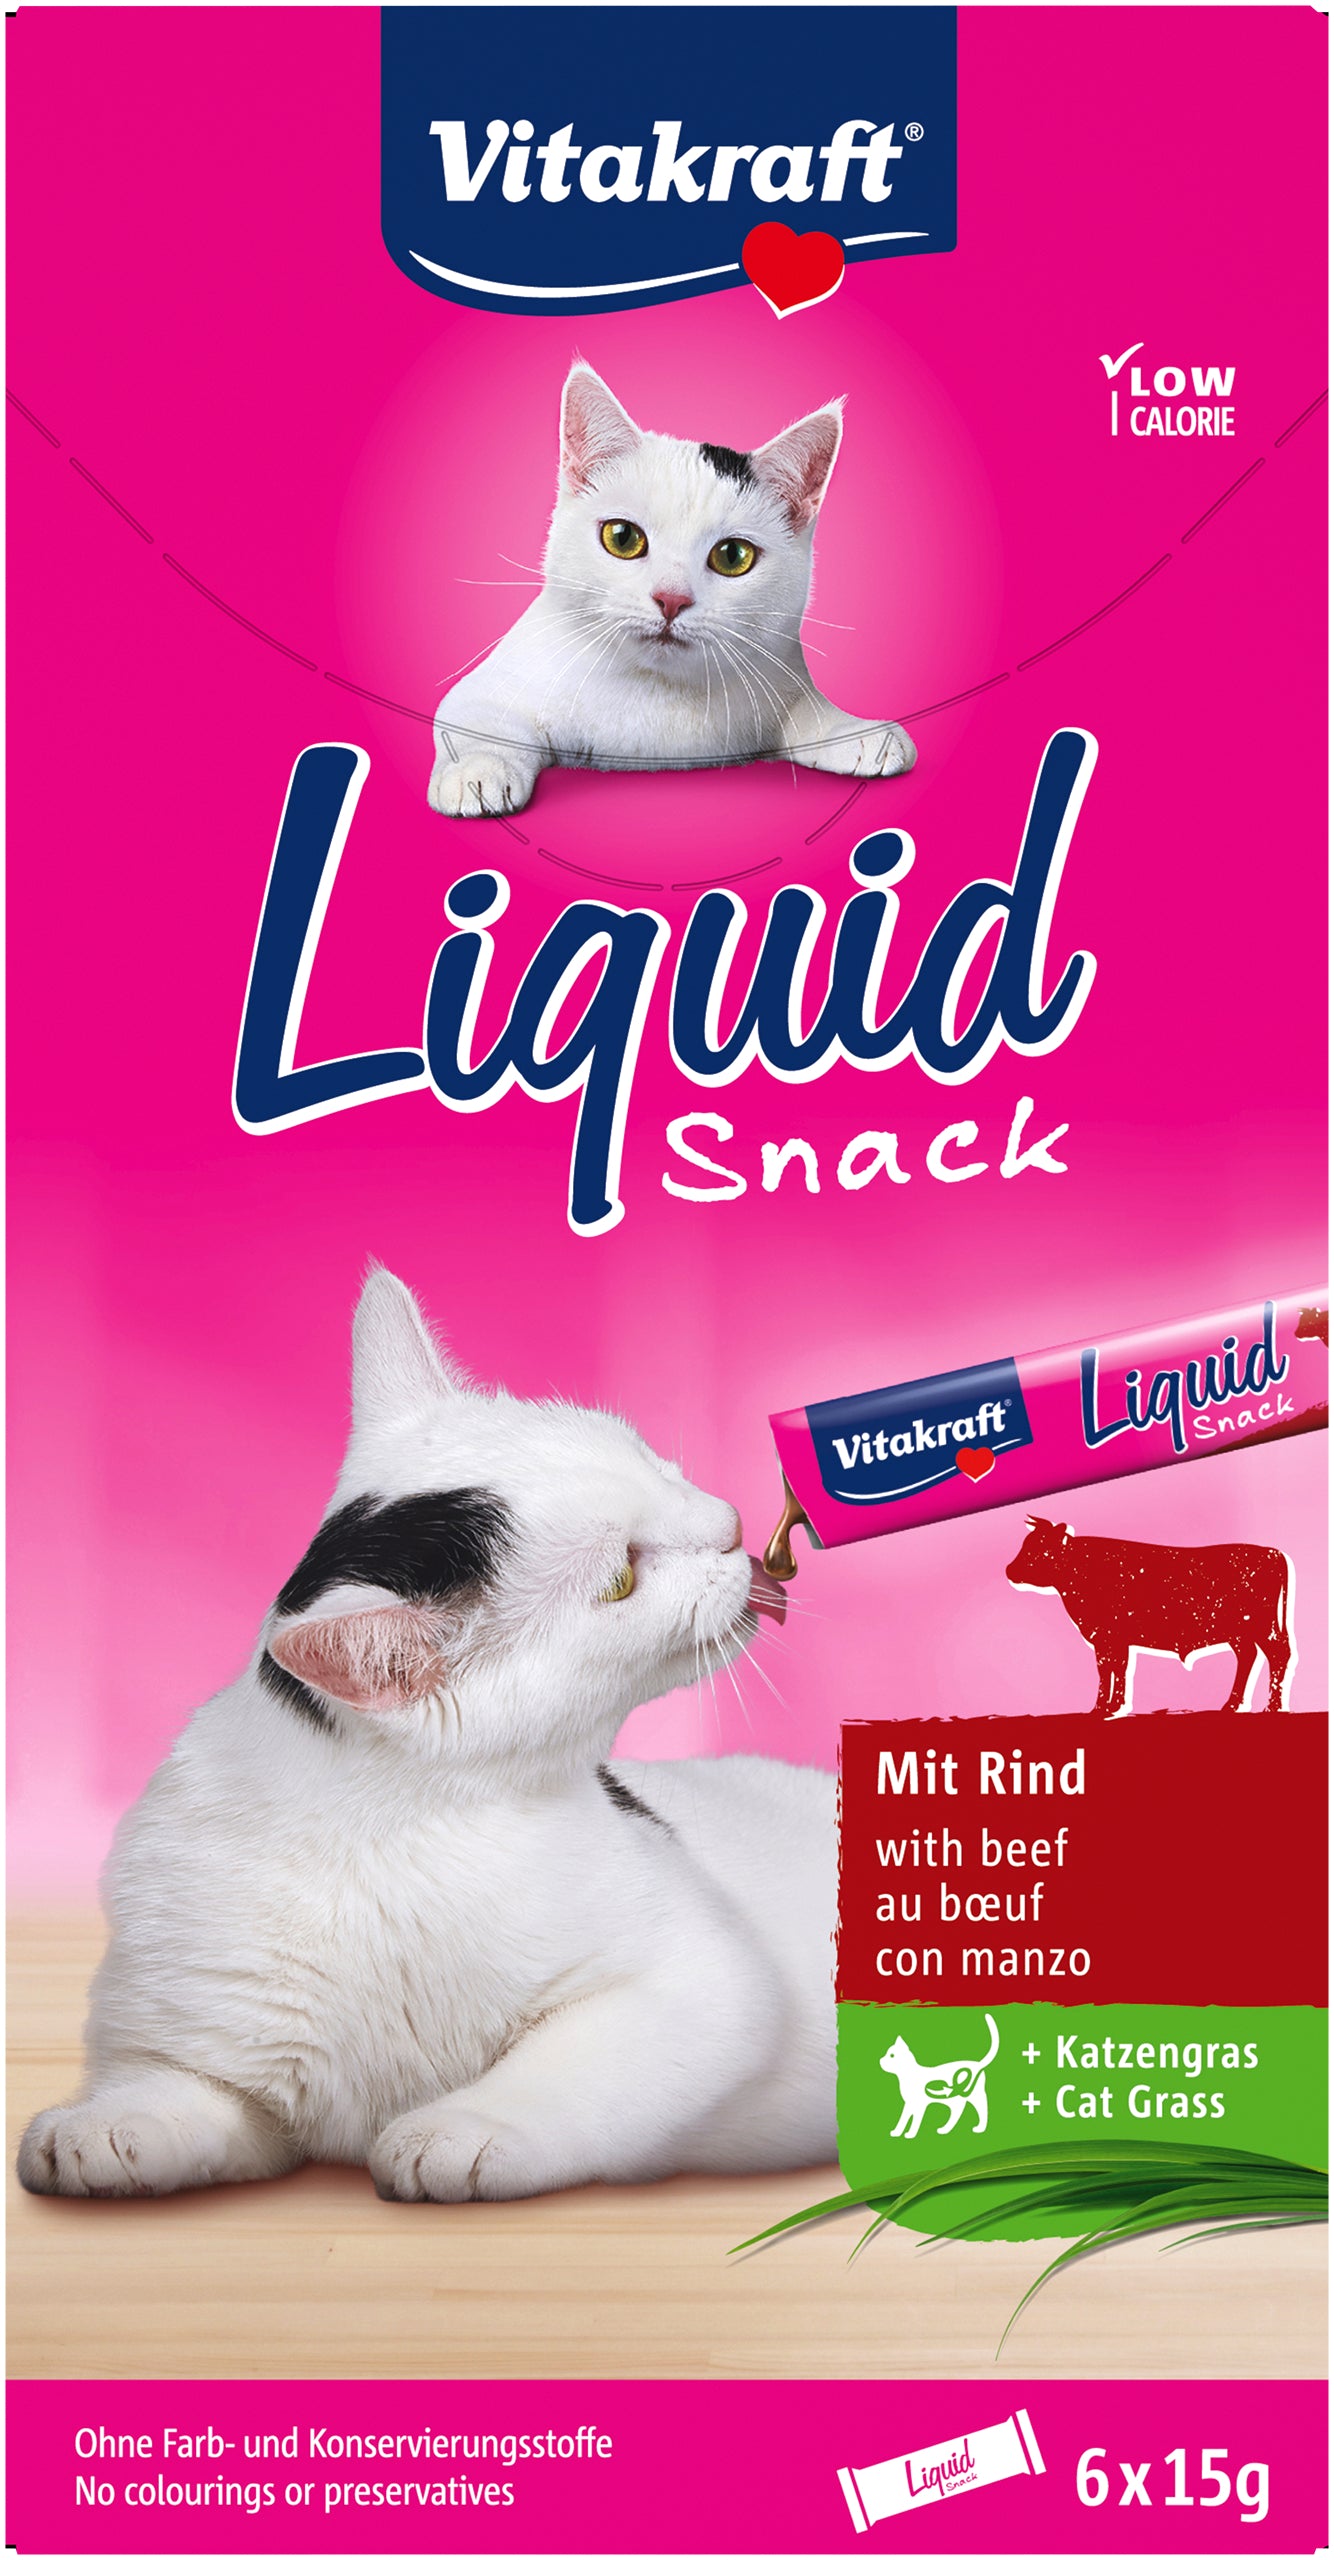 Billede af Vitakraft Liquid Snack med okse, inulin og kattegræs